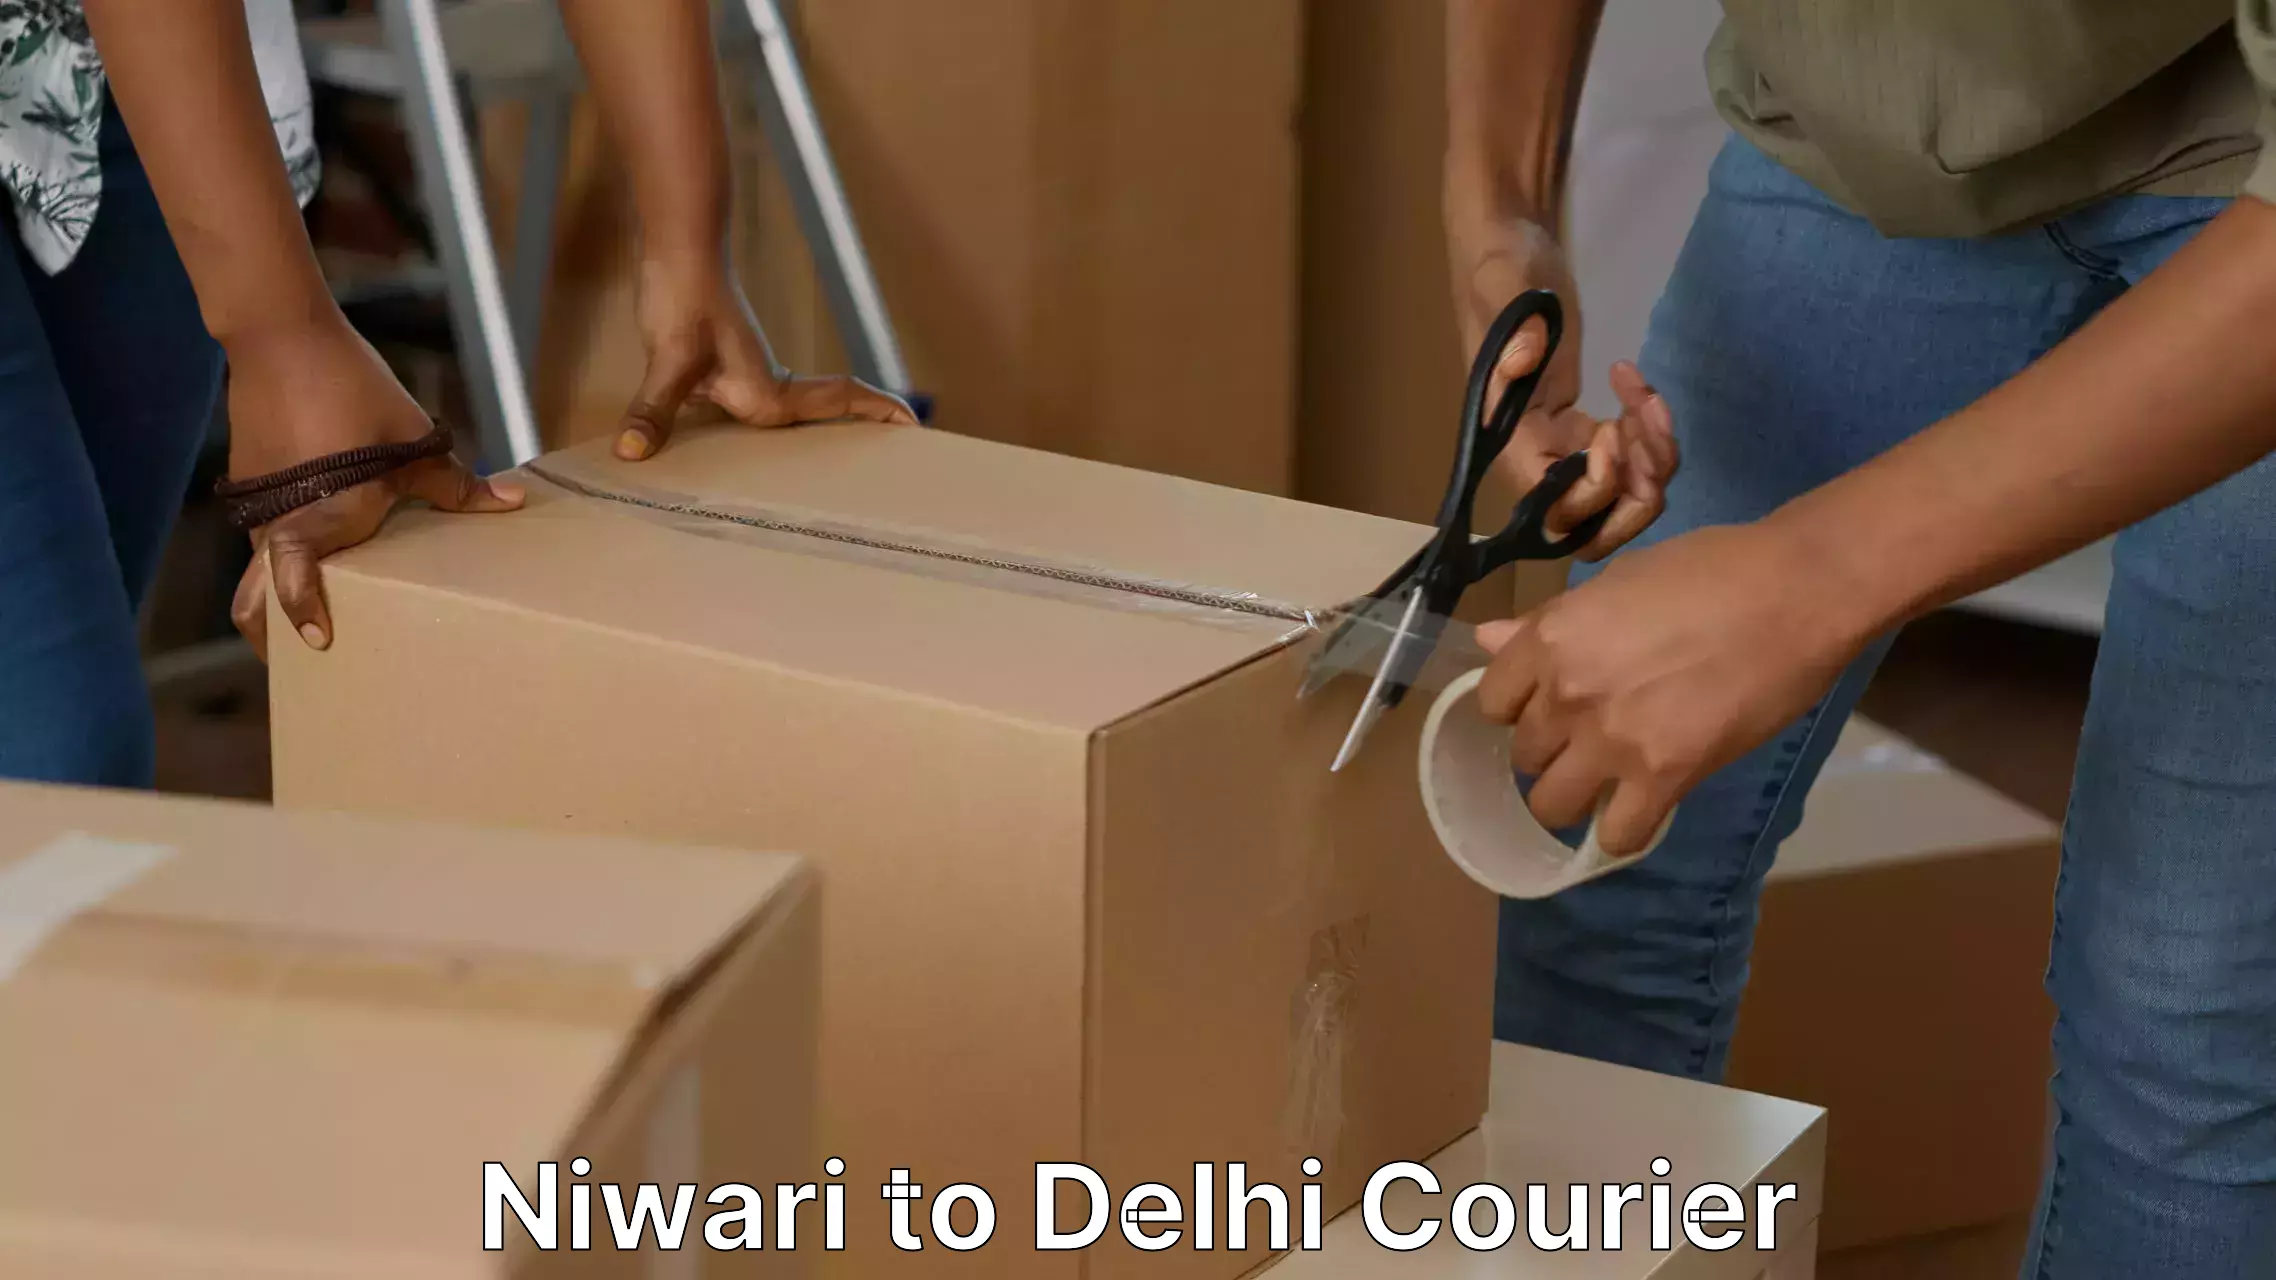 Furniture transport services Niwari to NCR